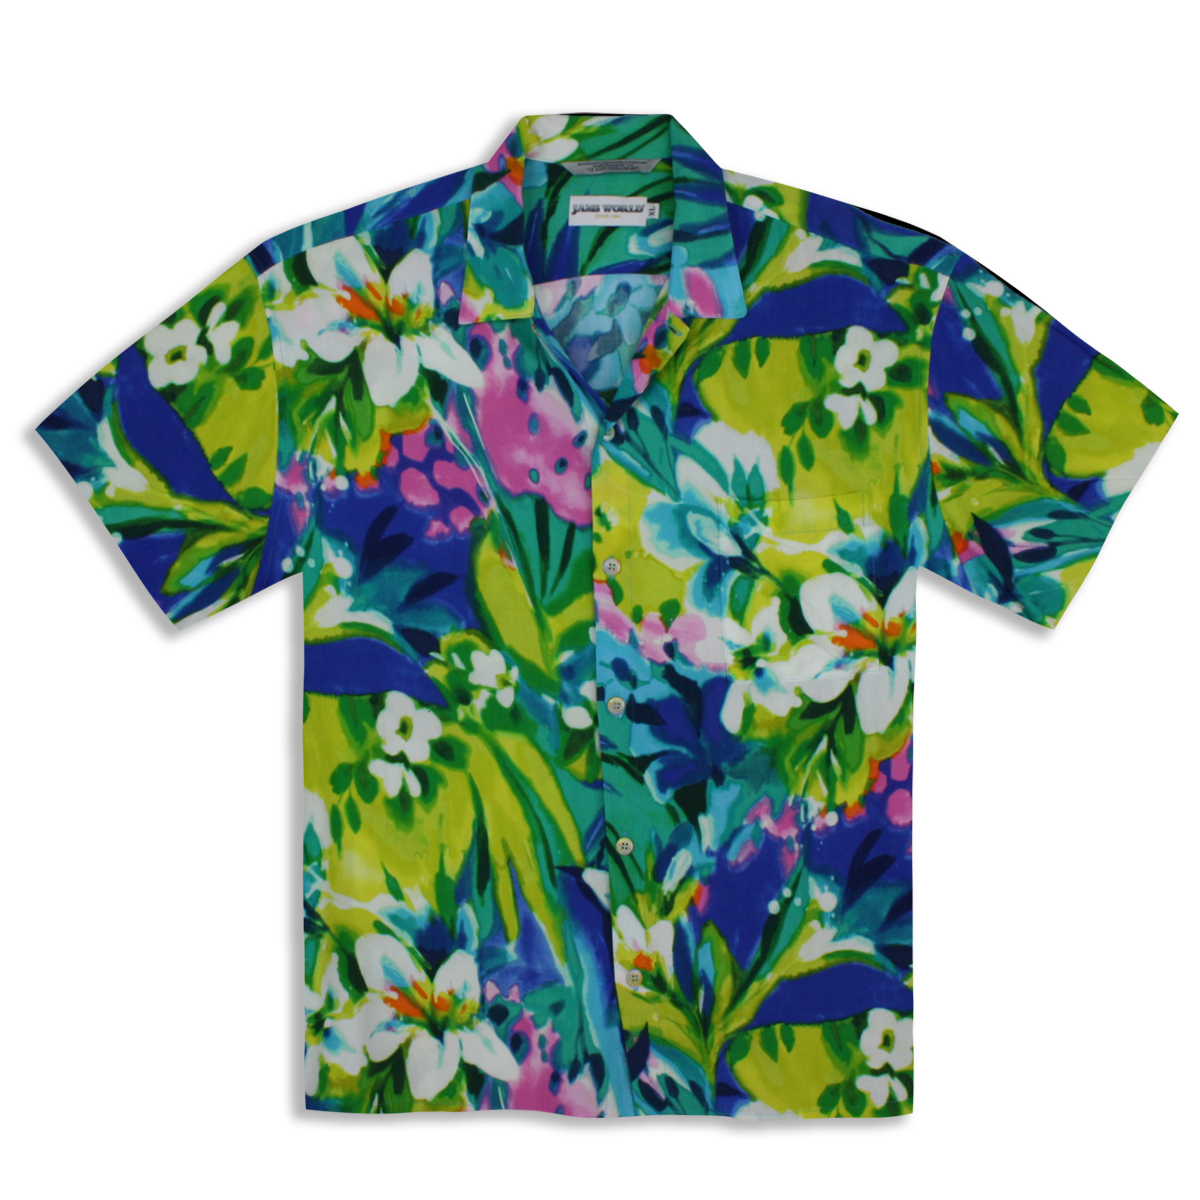 Kleding Herenkleding Overhemden & T-shirts Oxfords & Buttondowns Vintage 90s Jams World California Graphic Novelty Shirt 